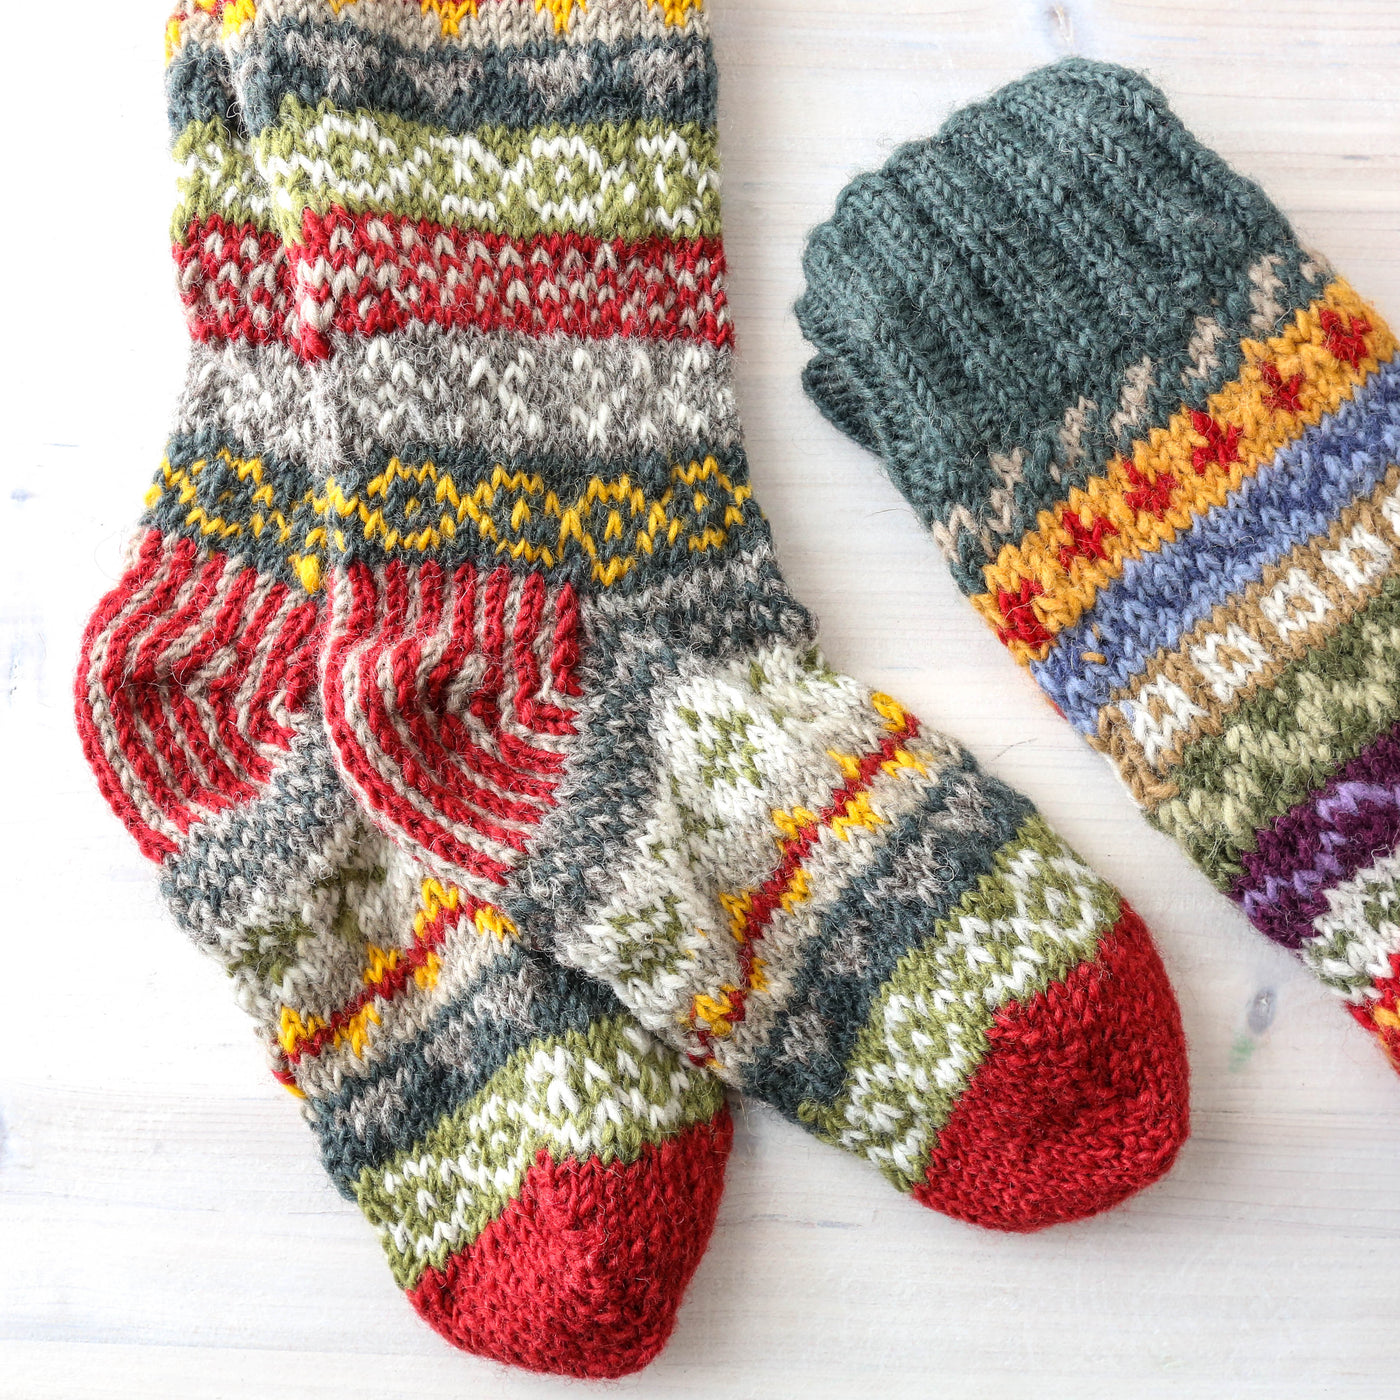 Long Hand Knitted Socks